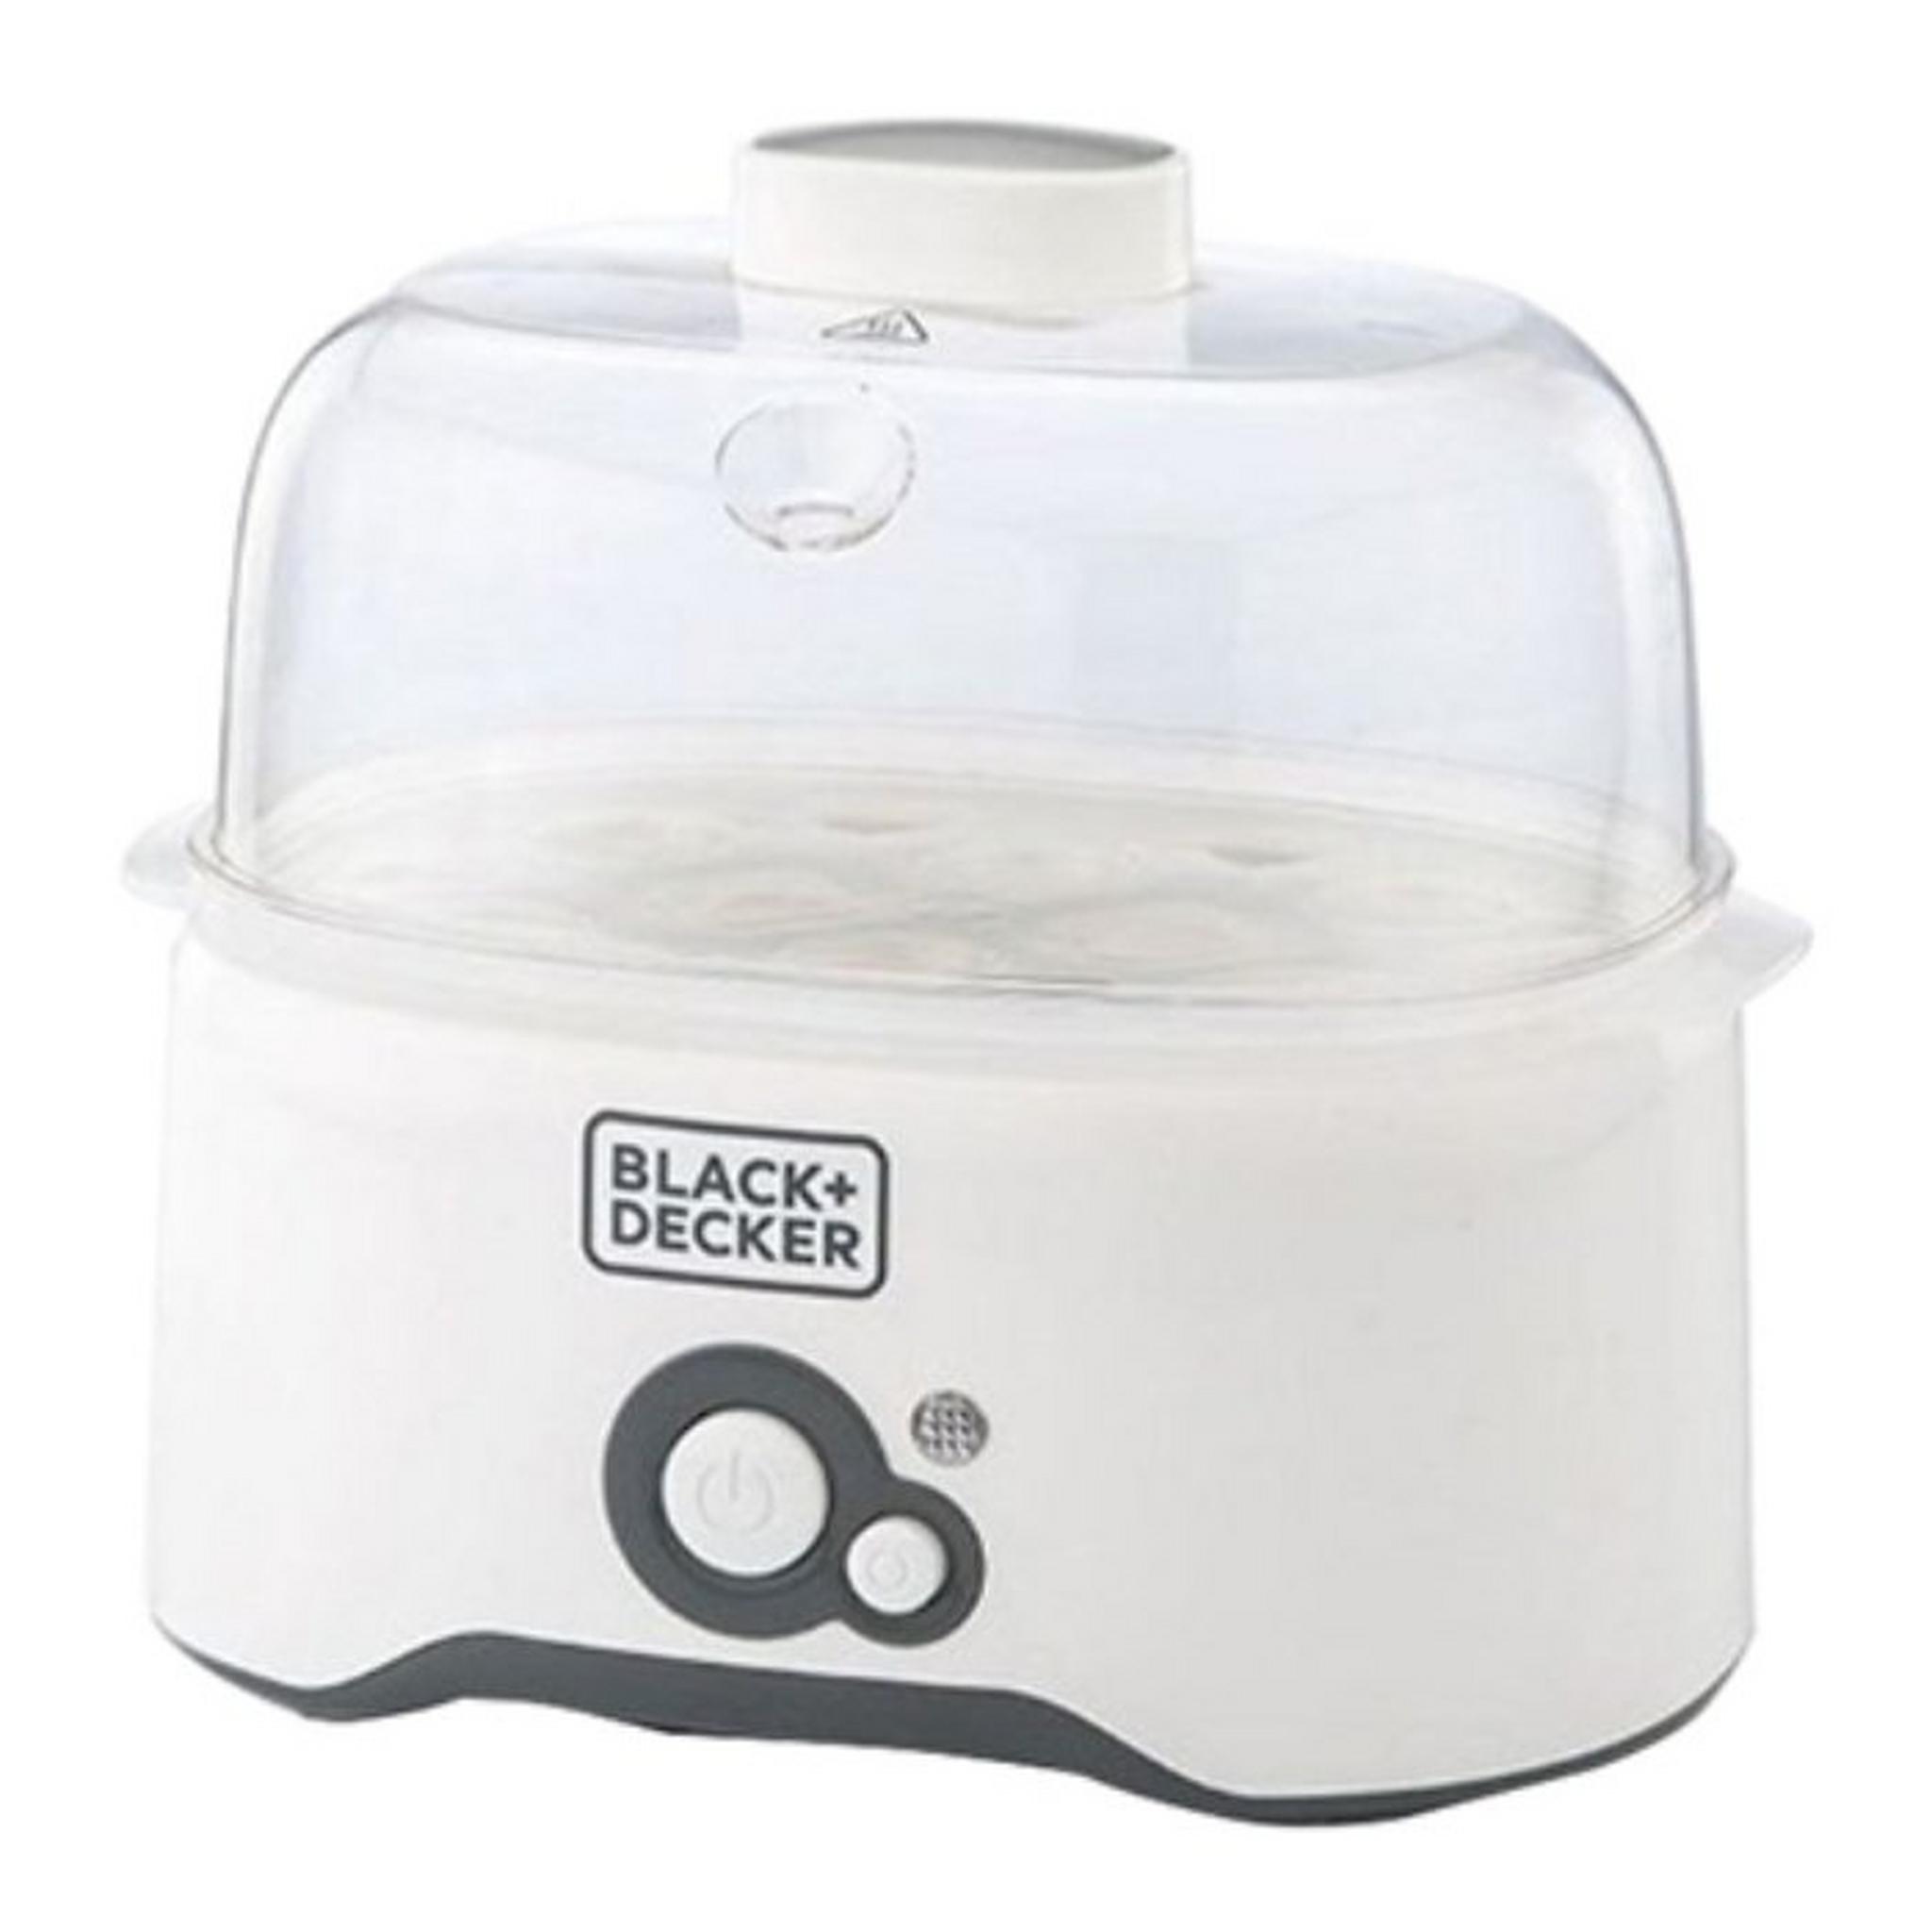 Black + Decker 280W Egg Boiler (EG200-B5) - White